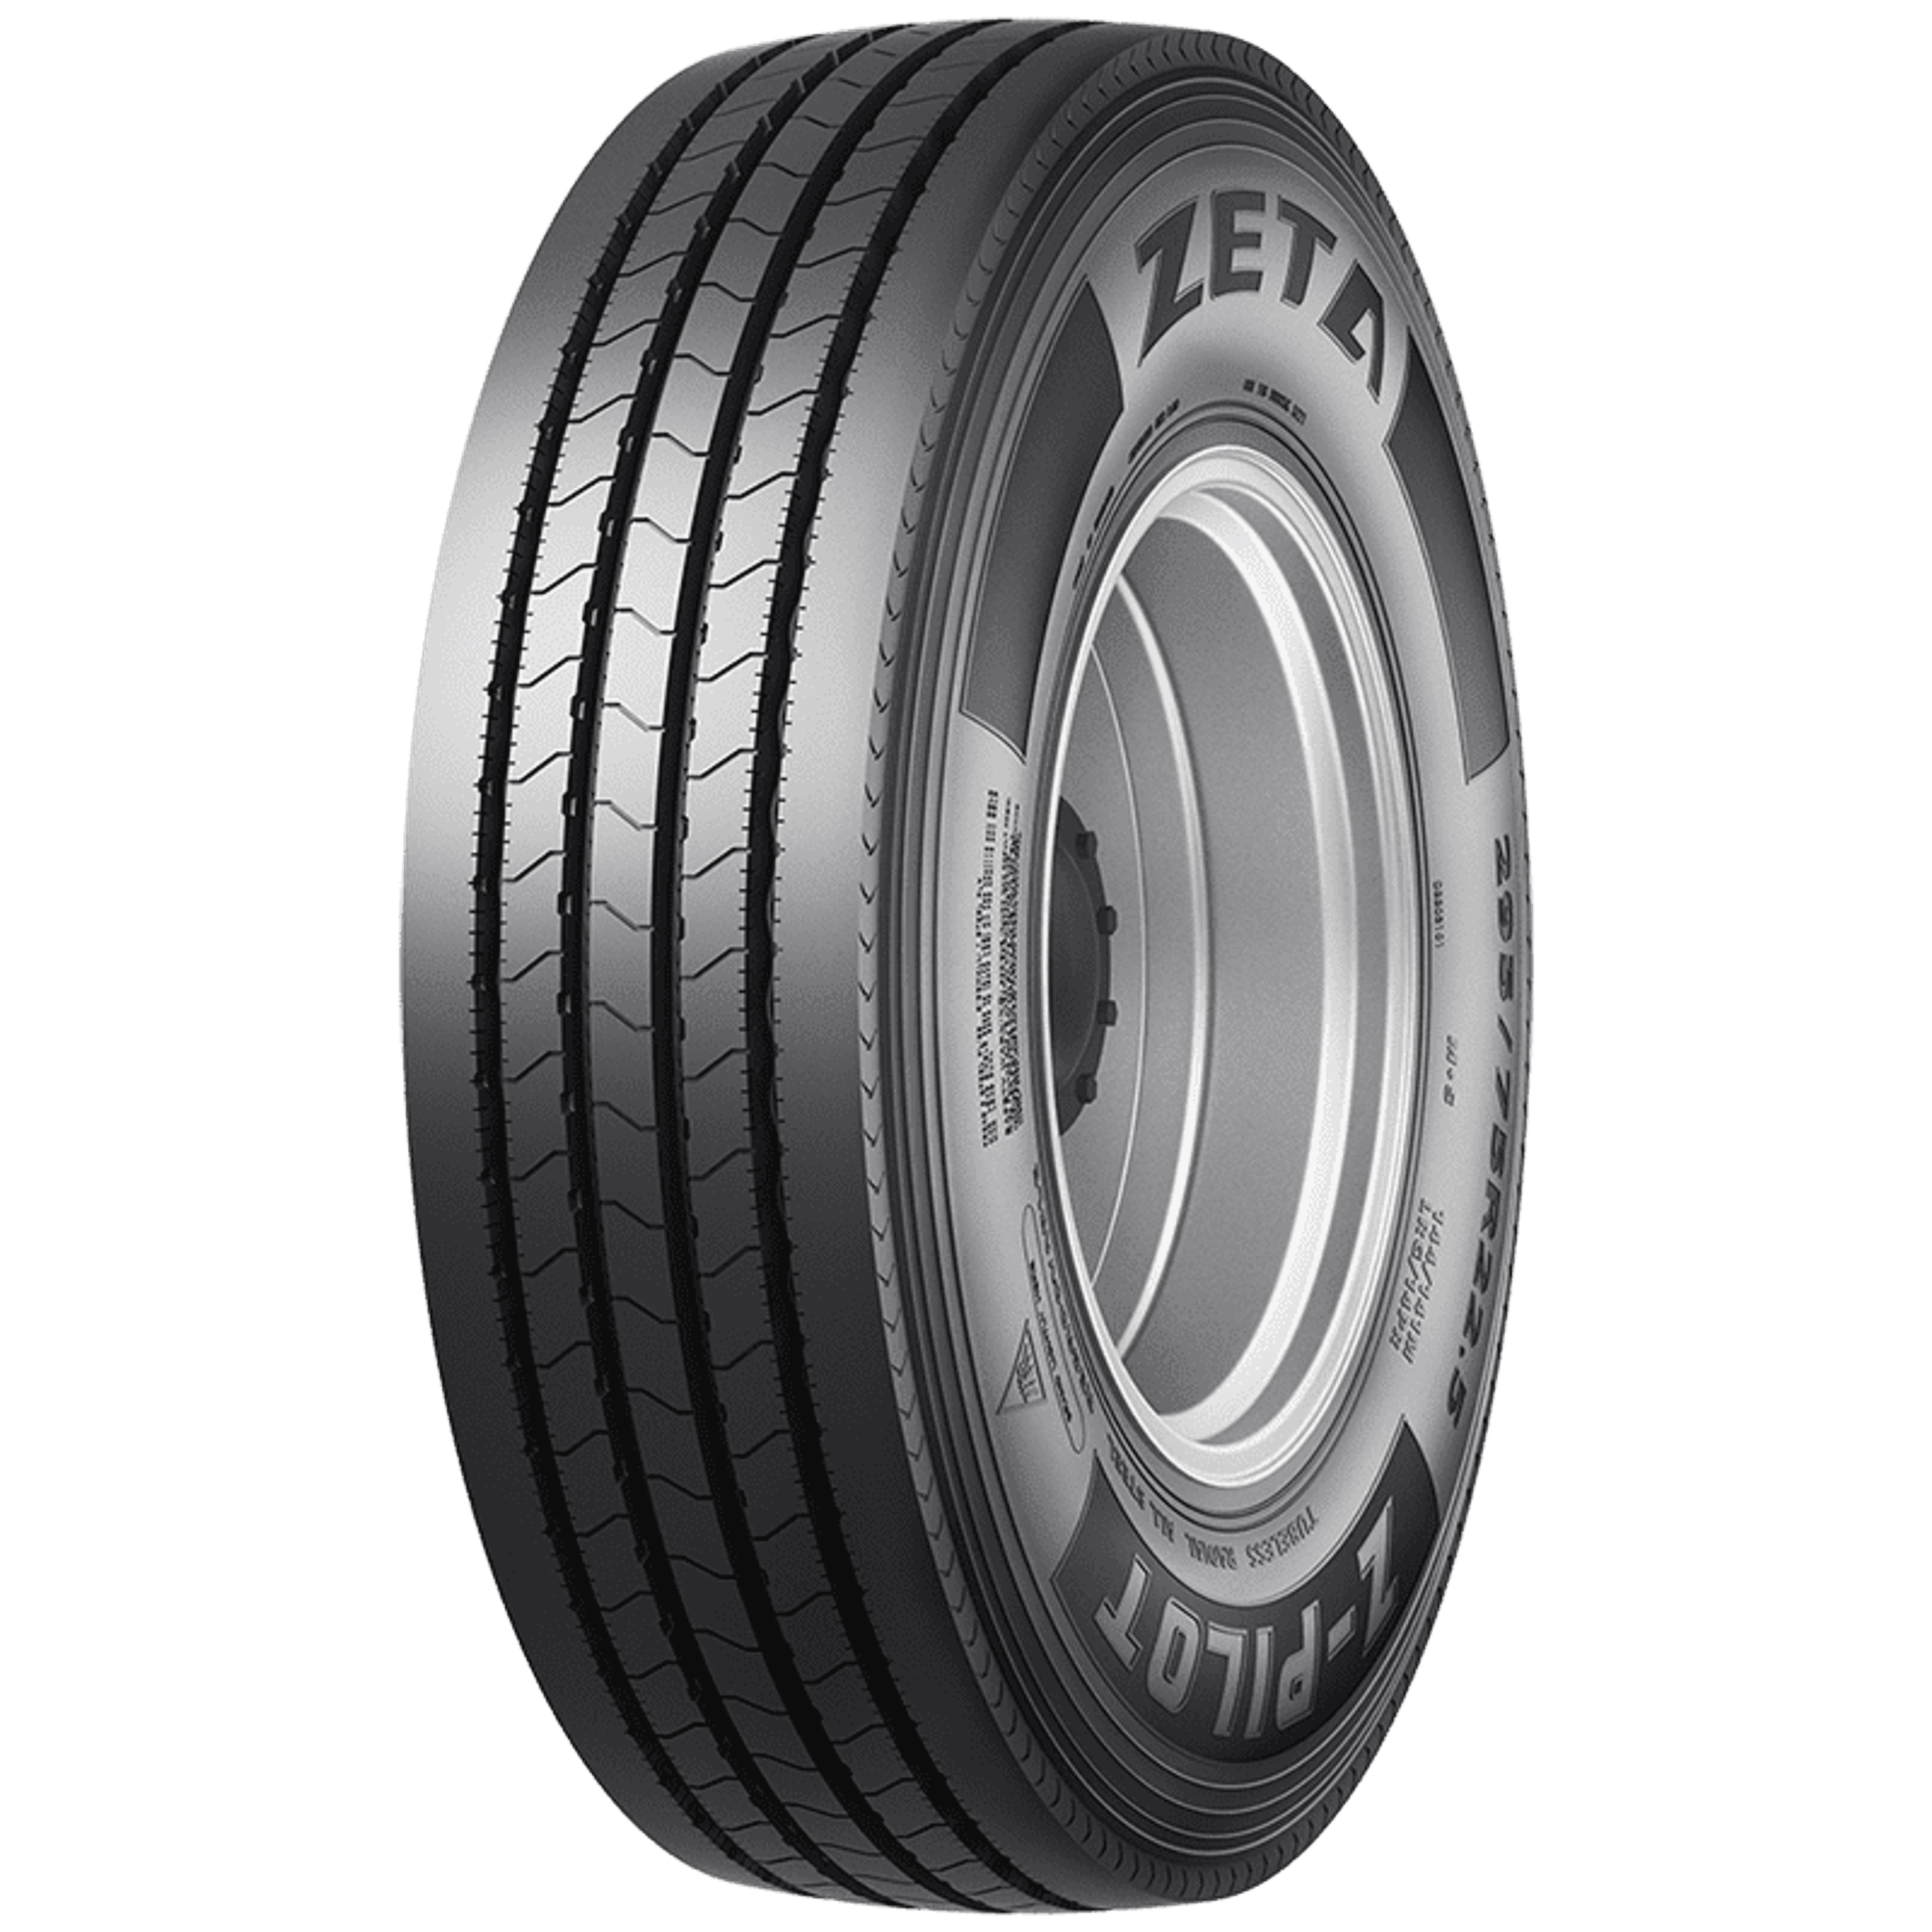 Buy Zeta Z-Pilot Tires Online | SimpleTire